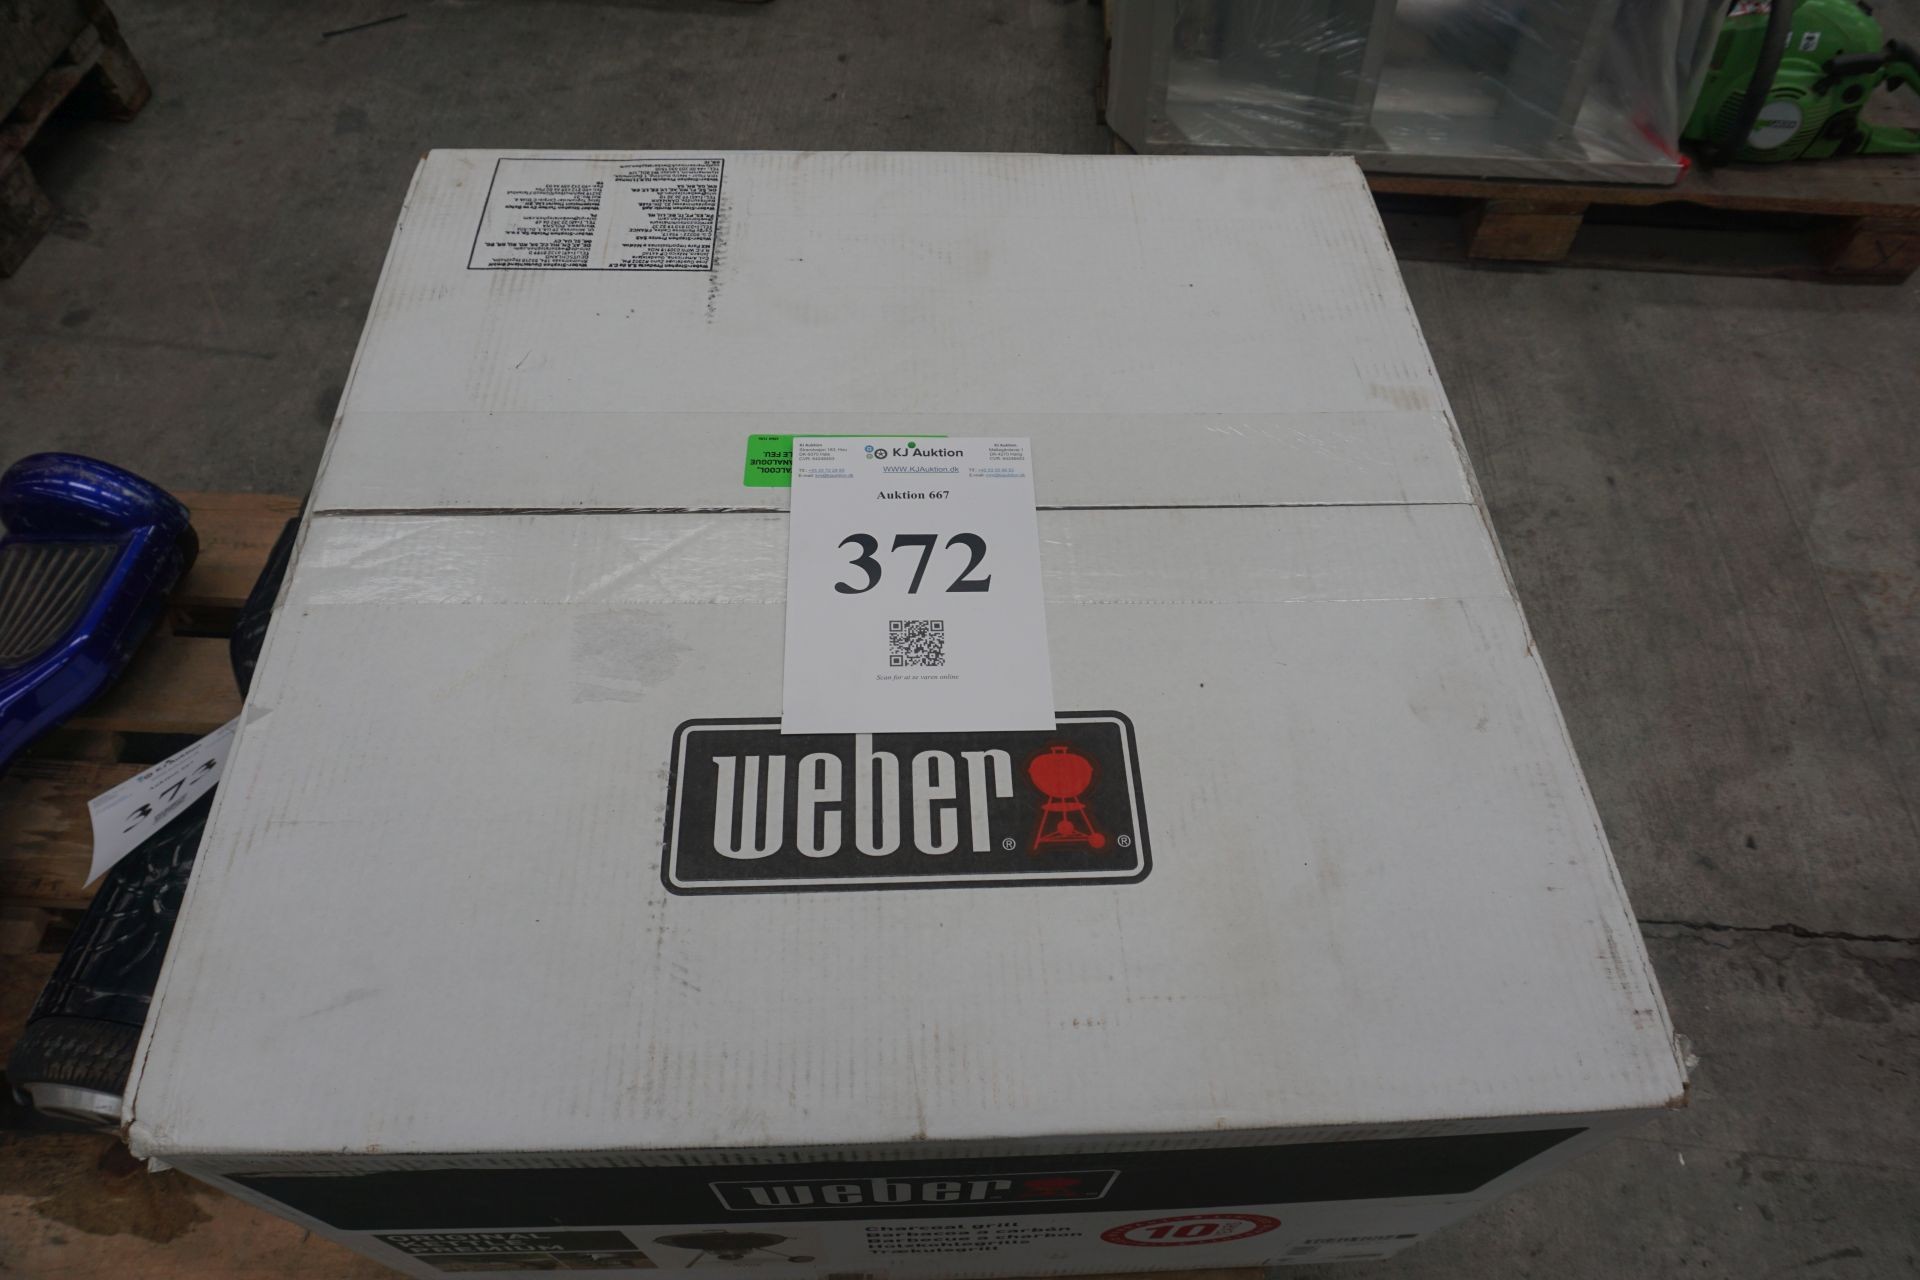 Weber grill ny. KJ Auktion Maskinauktioner